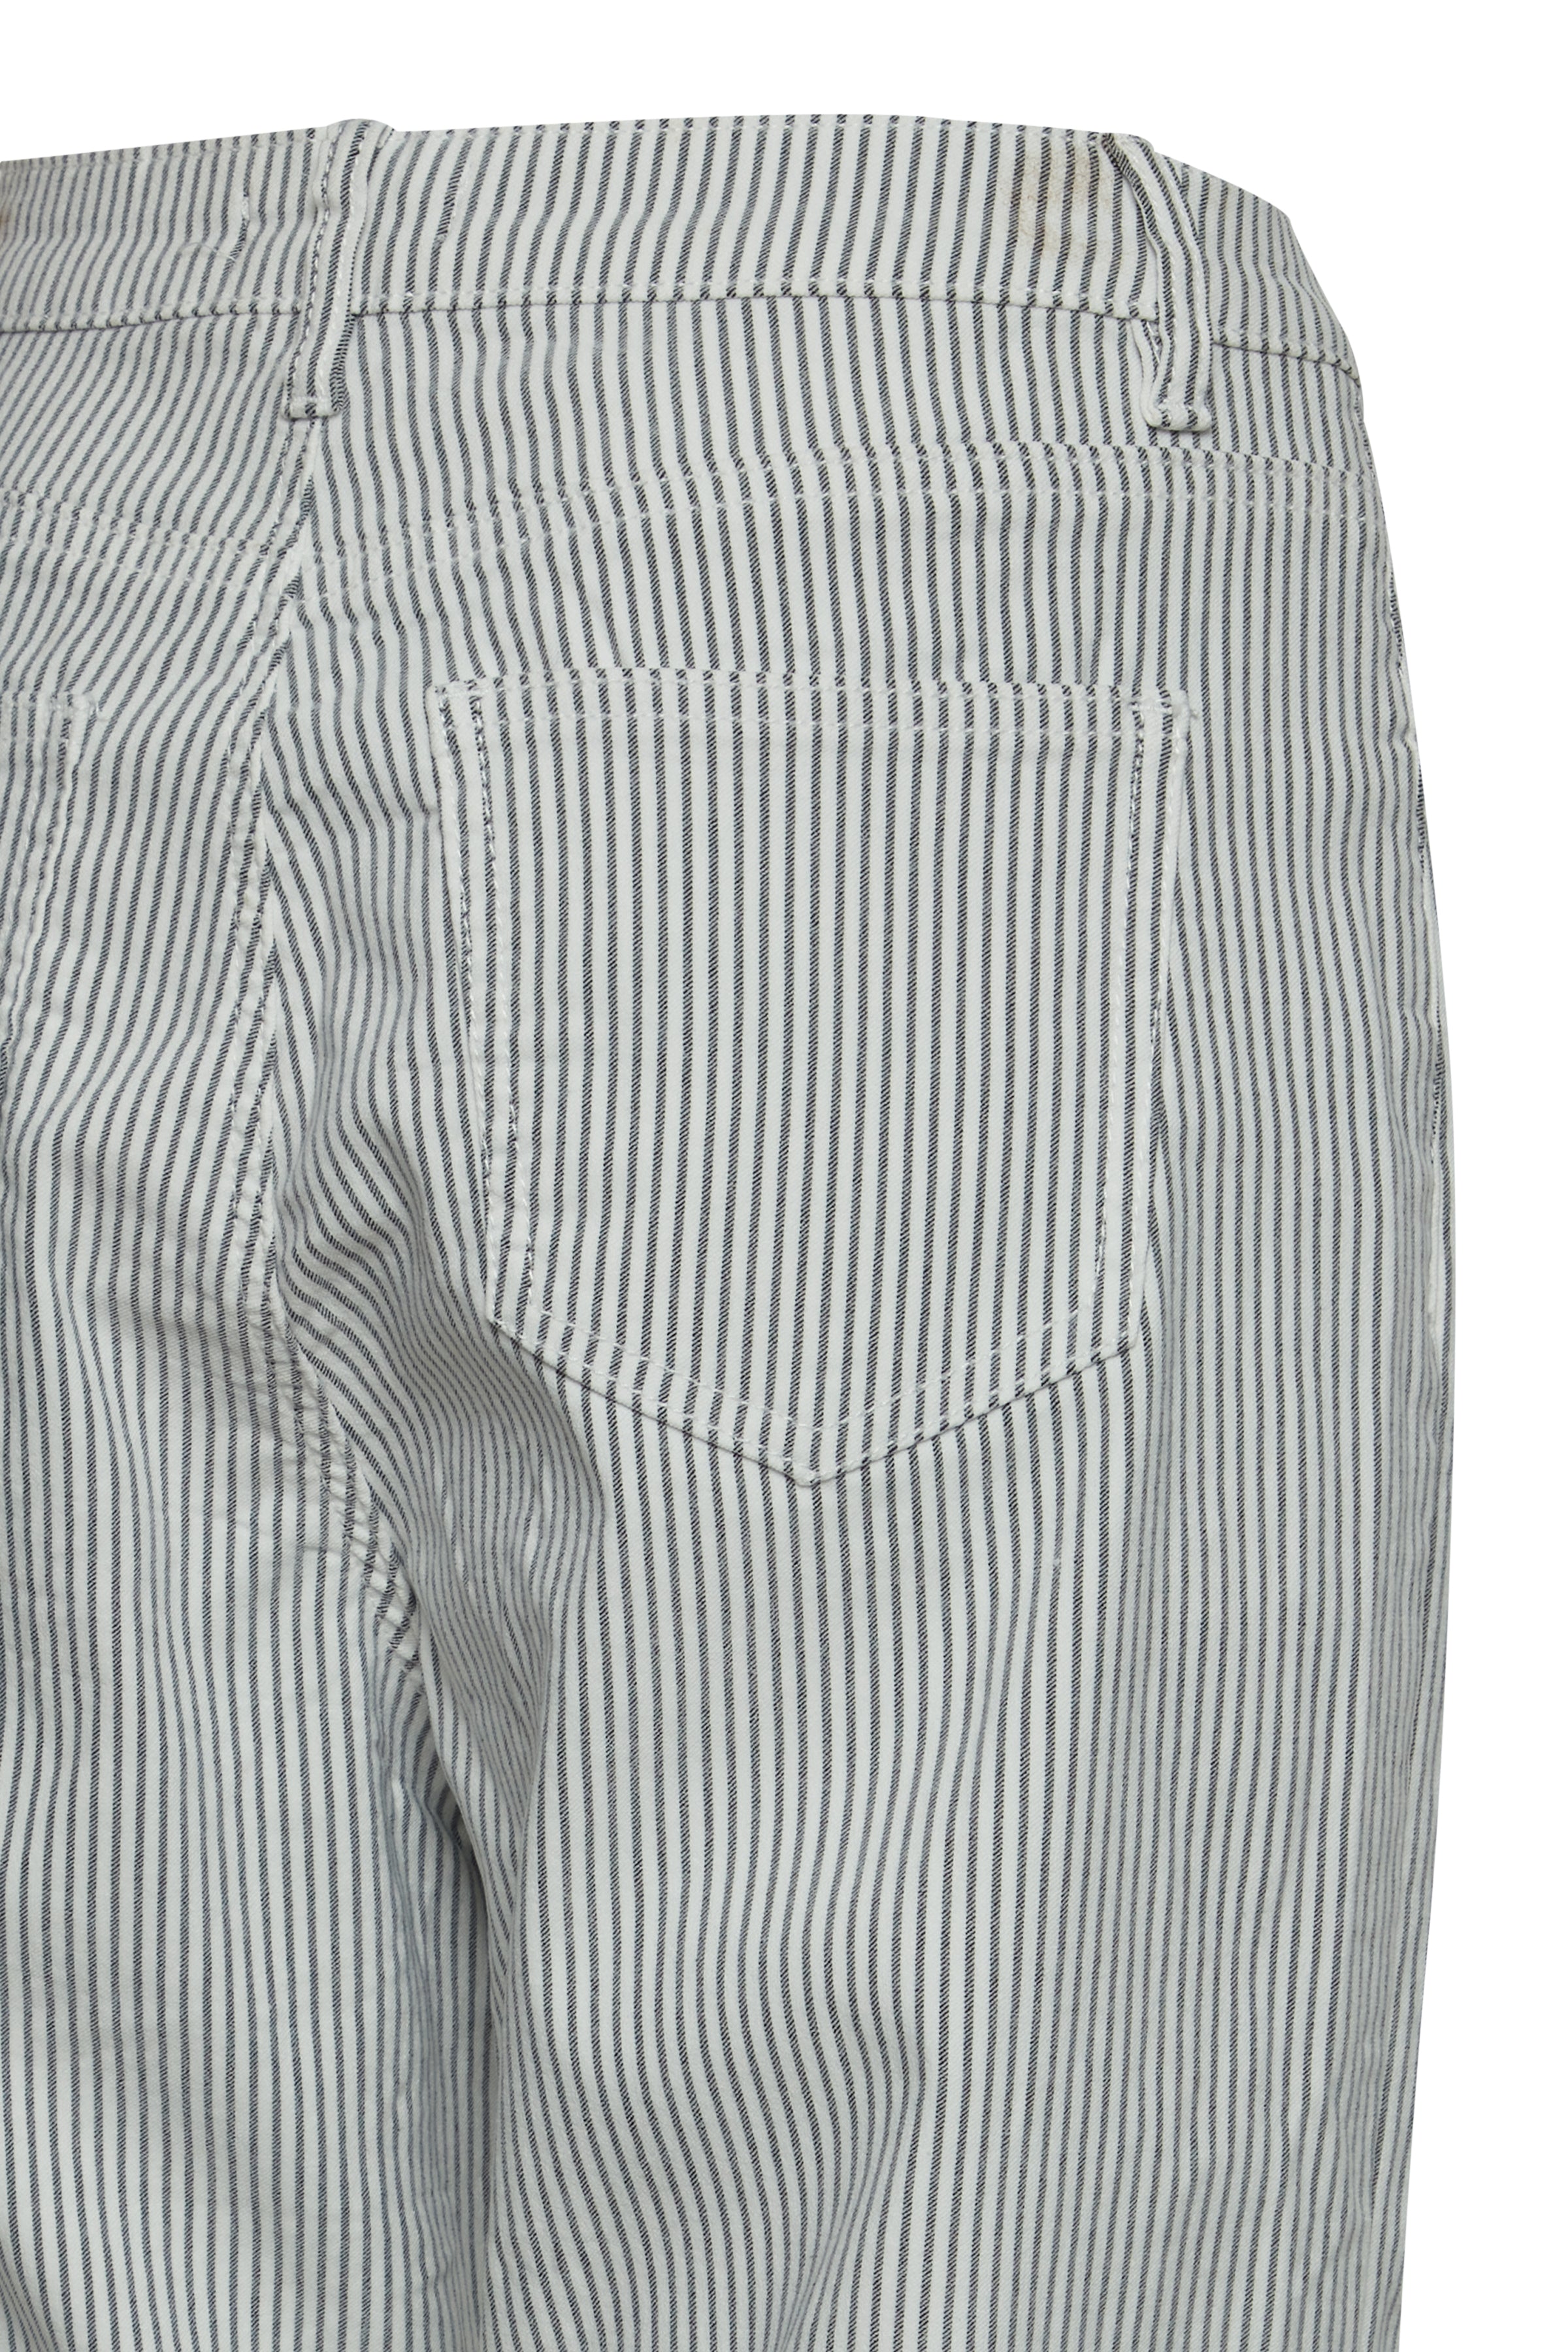 bukser med striber fra Sorbet, bagfra, nærbillede af baglomme 